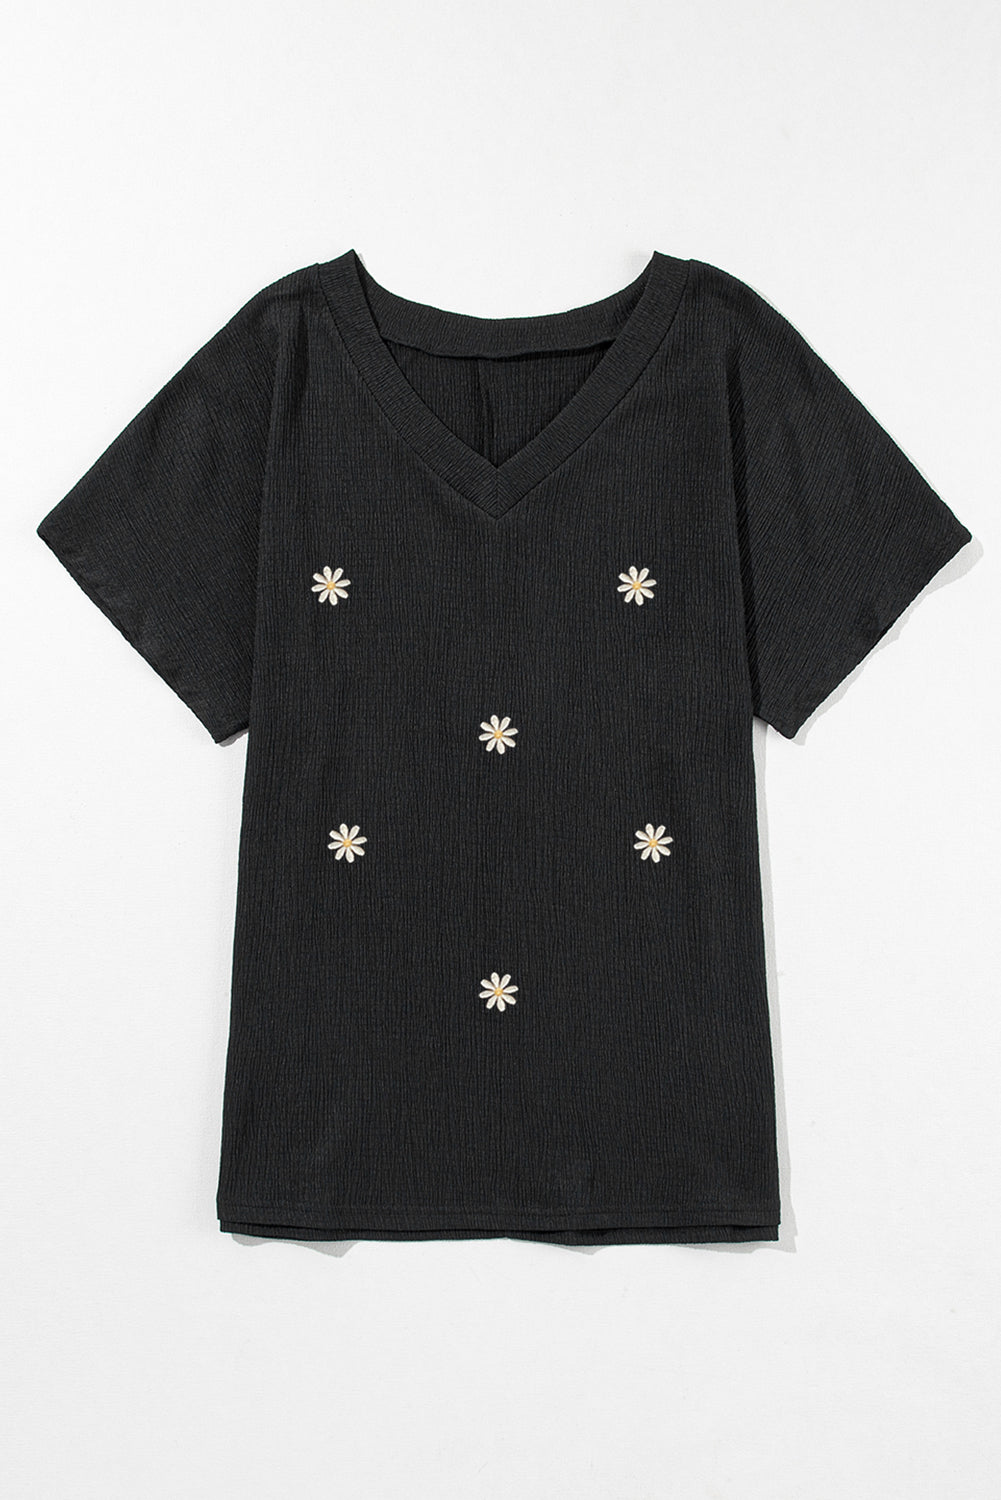 Black Crinkled Daisy Embroidered V Neck T Shirt